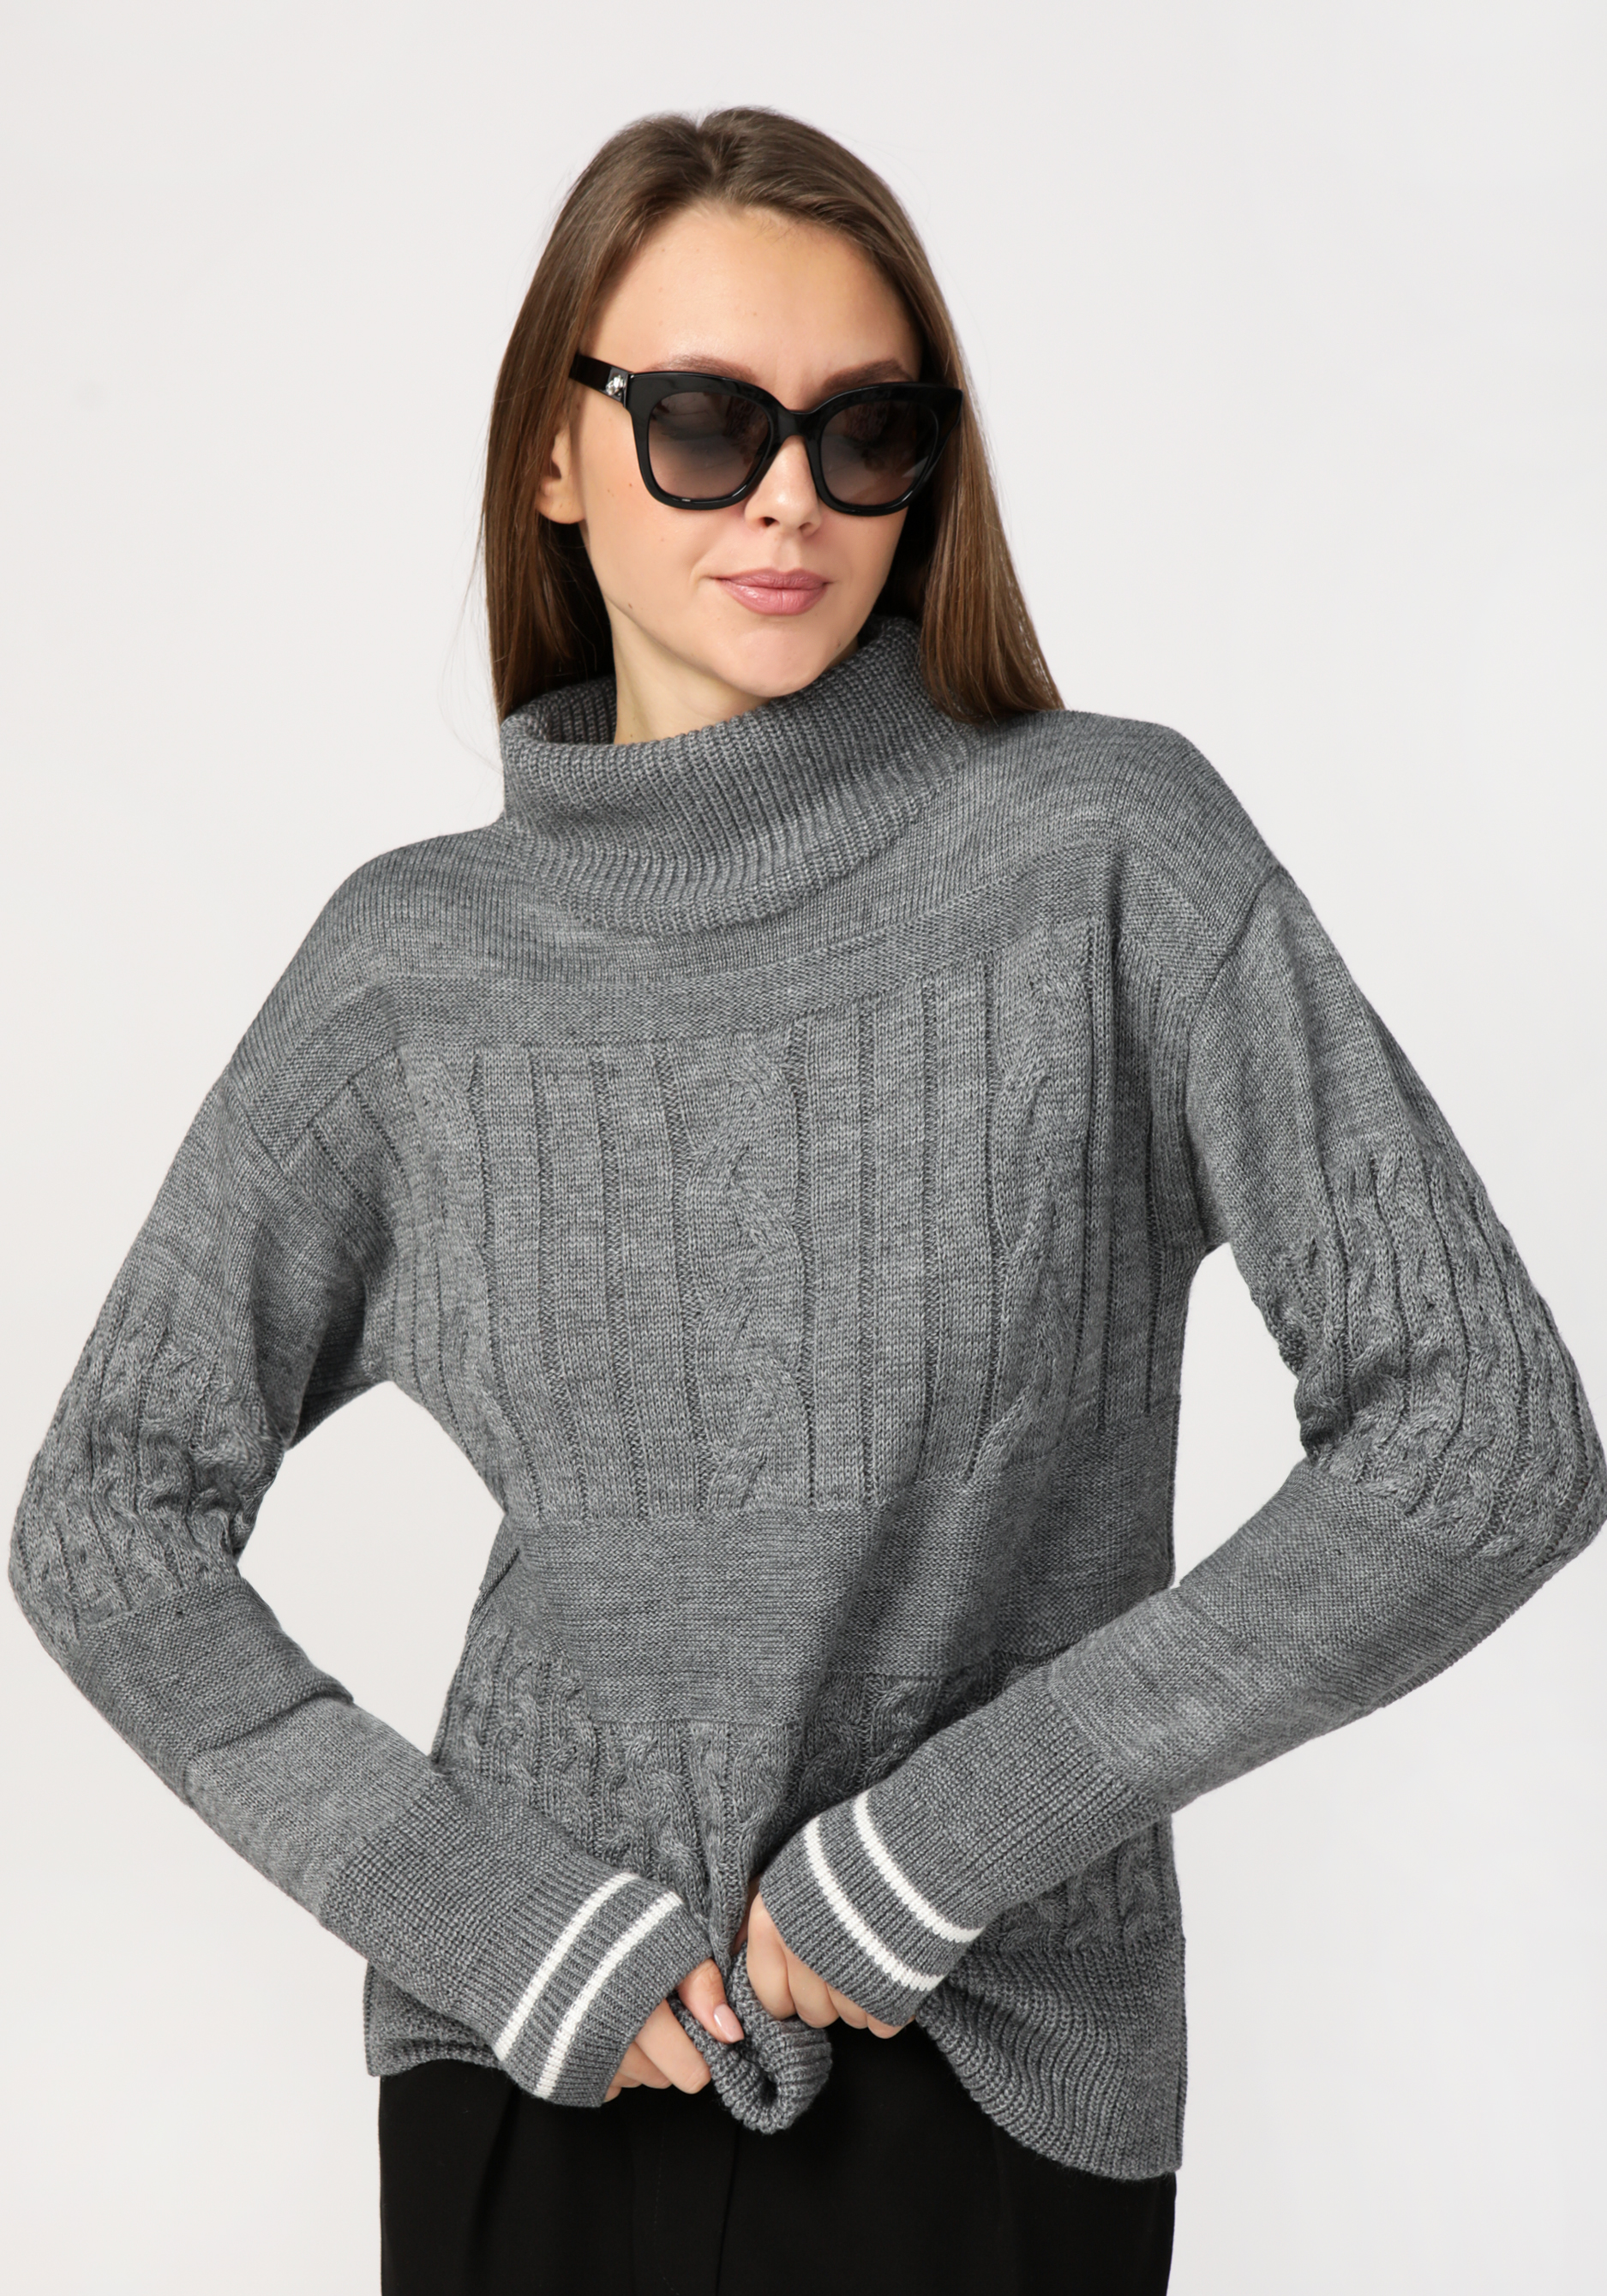 Свитер женский с эффектом структурных кос triol свитер помпончики m темно серый